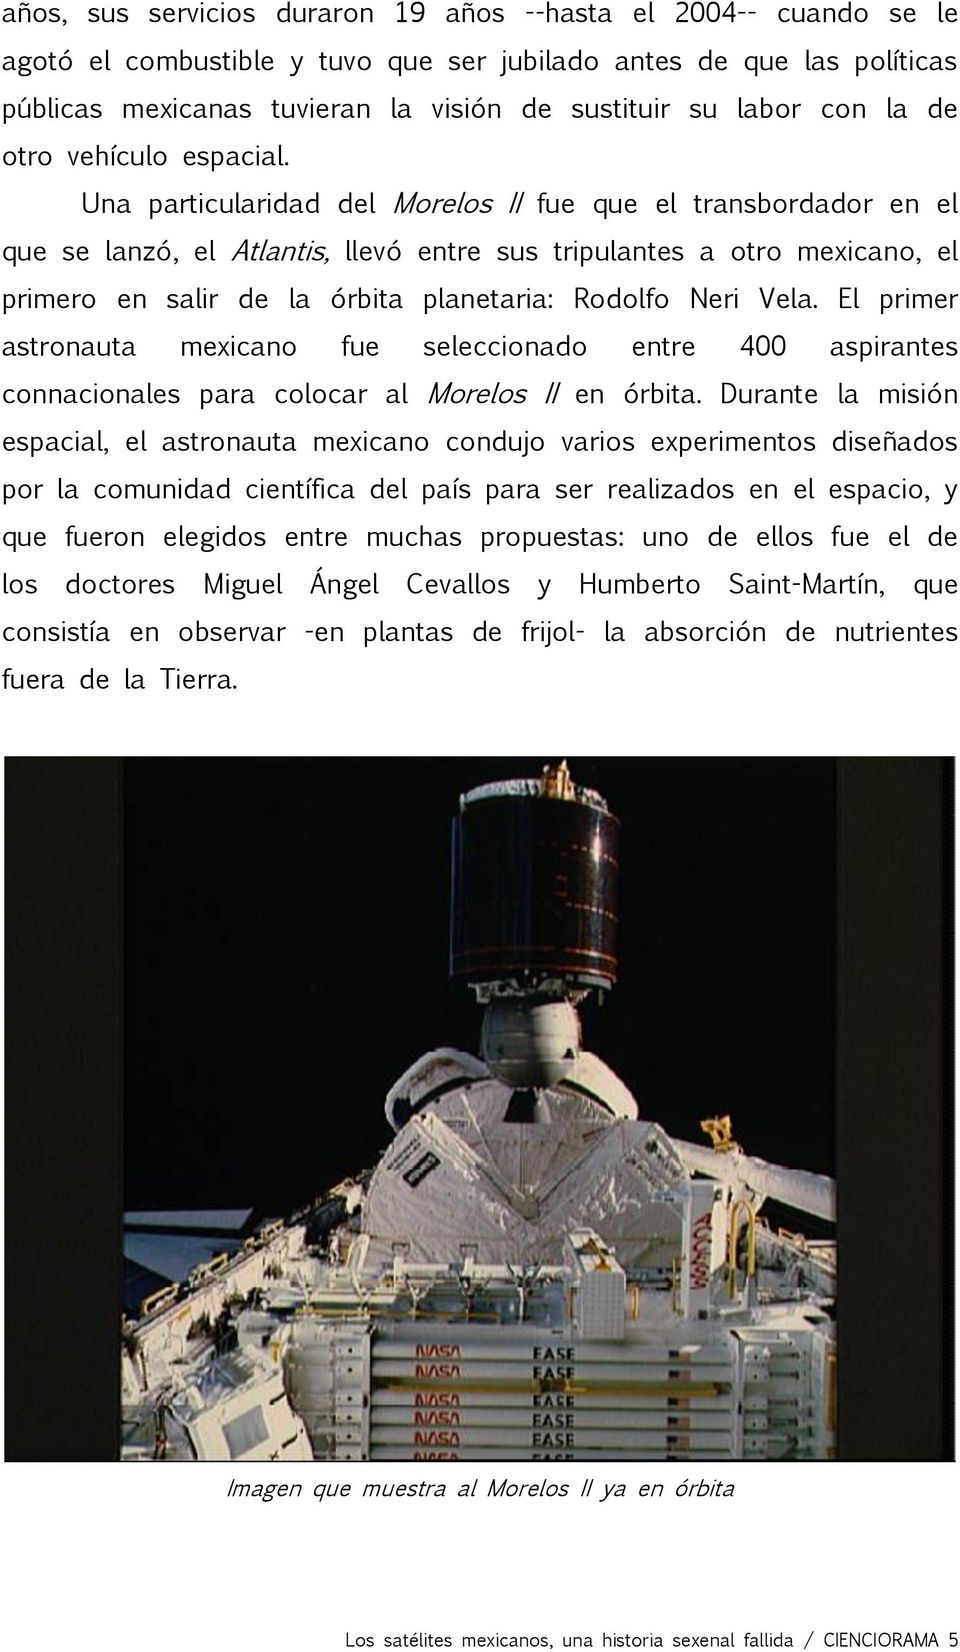 Una particularidad del Morelos II fue que el transbordador en el que se lanzó, el Atlantis, llevó entre sus tripulantes a otro mexicano, el primero en salir de la órbita planetaria: Rodolfo Neri Vela.